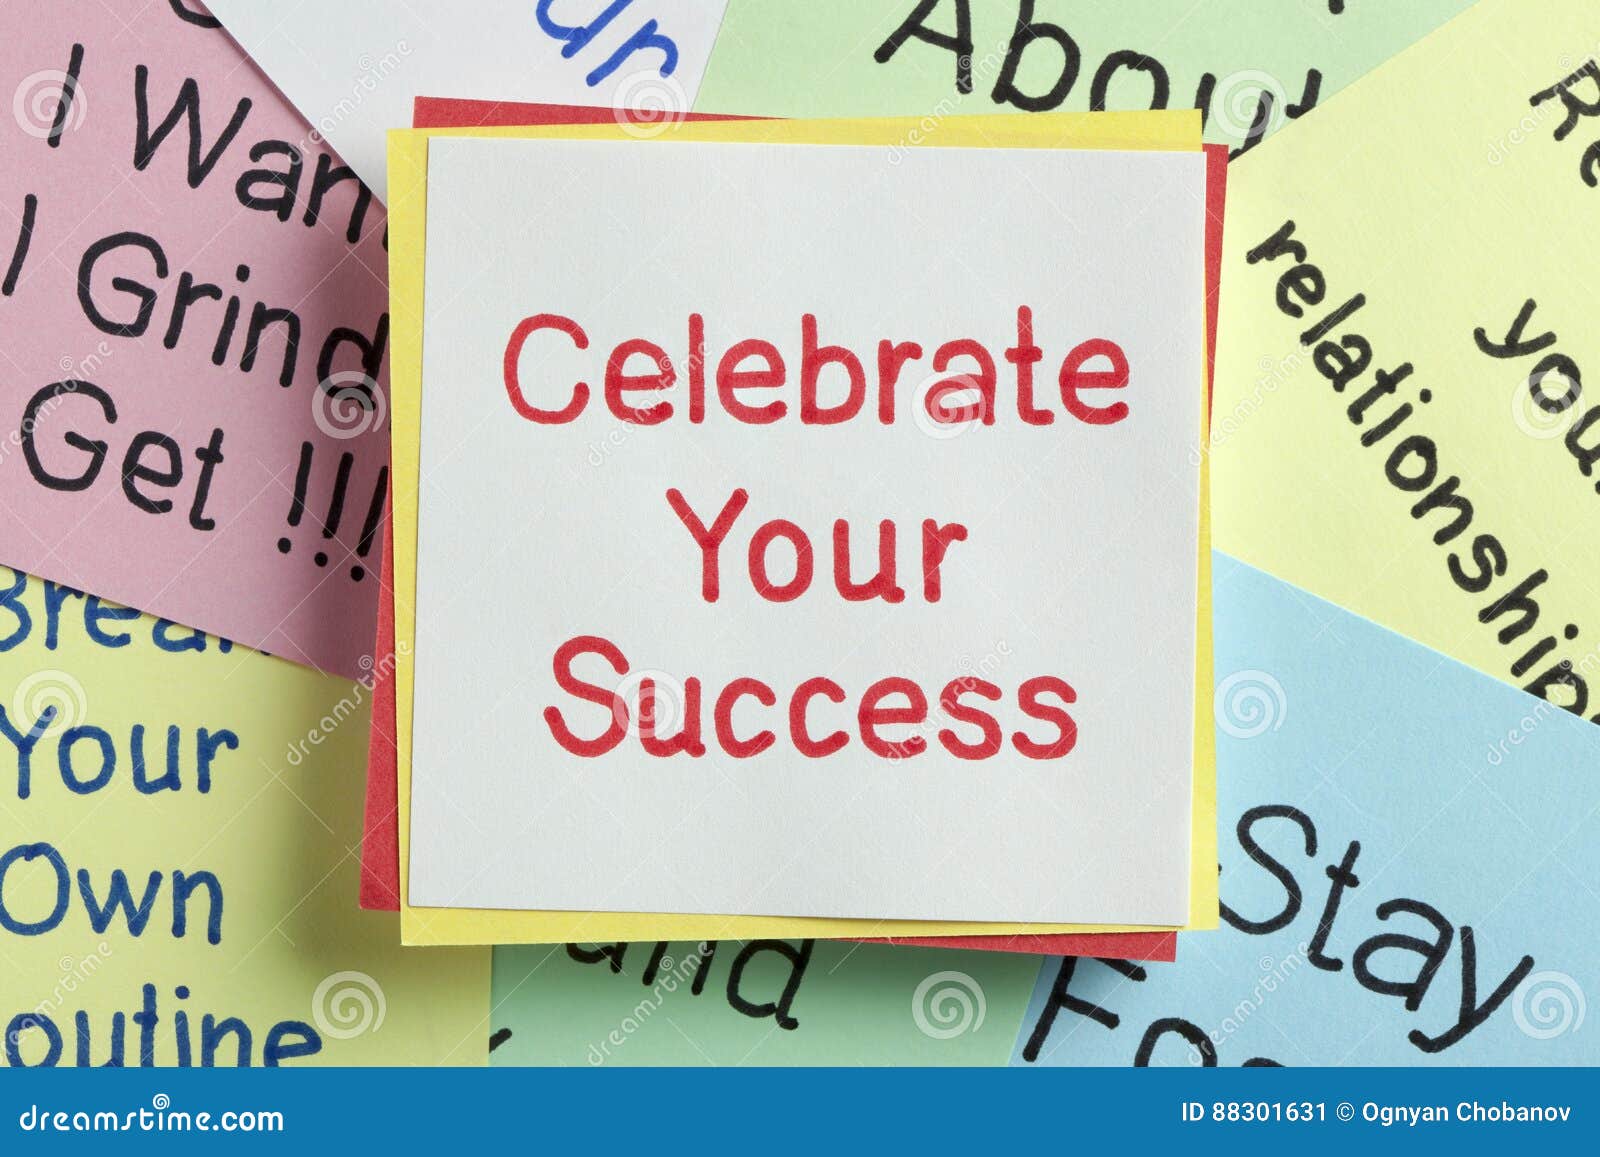 celebrate your success